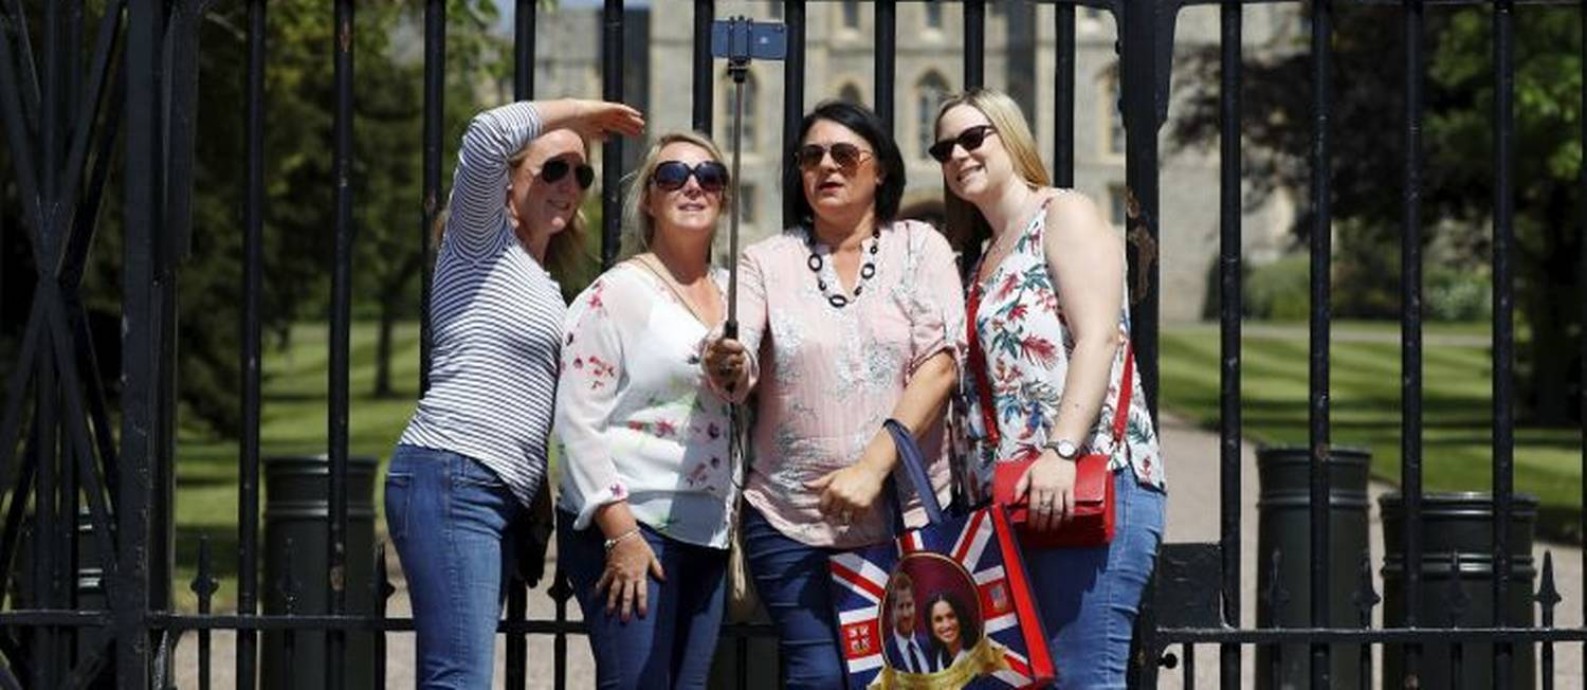 
Selfie. Lembranças do casamento em pose no portão do Castelo de Windsor
Foto: PHIL NOBLE / REUTERS